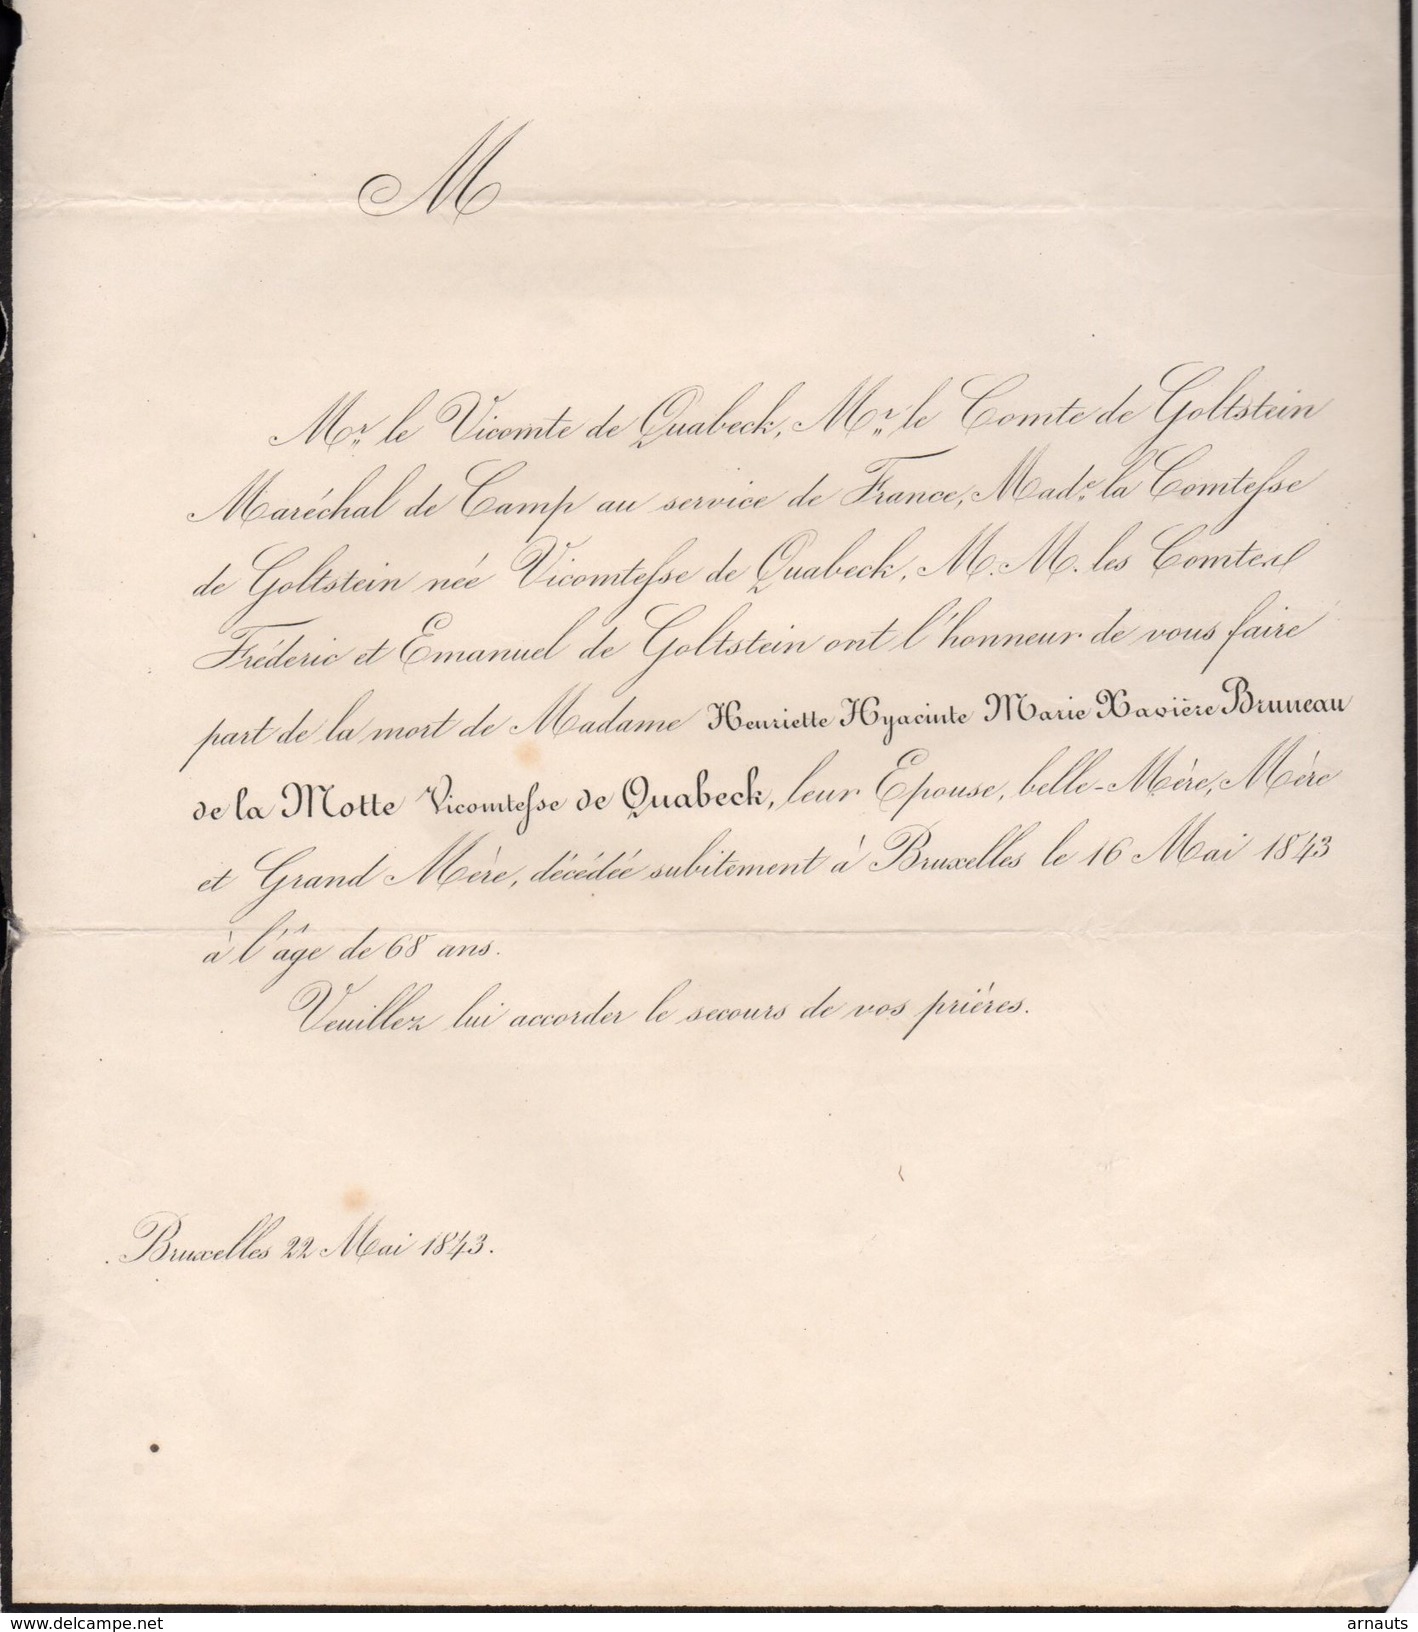 Henriette Bruneau De La Motte Vicomtesse De Quabeeck + Bruxelles 16/5/1843 68 Ans Golstein Maréchal De Camp France Goupy - Obituary Notices